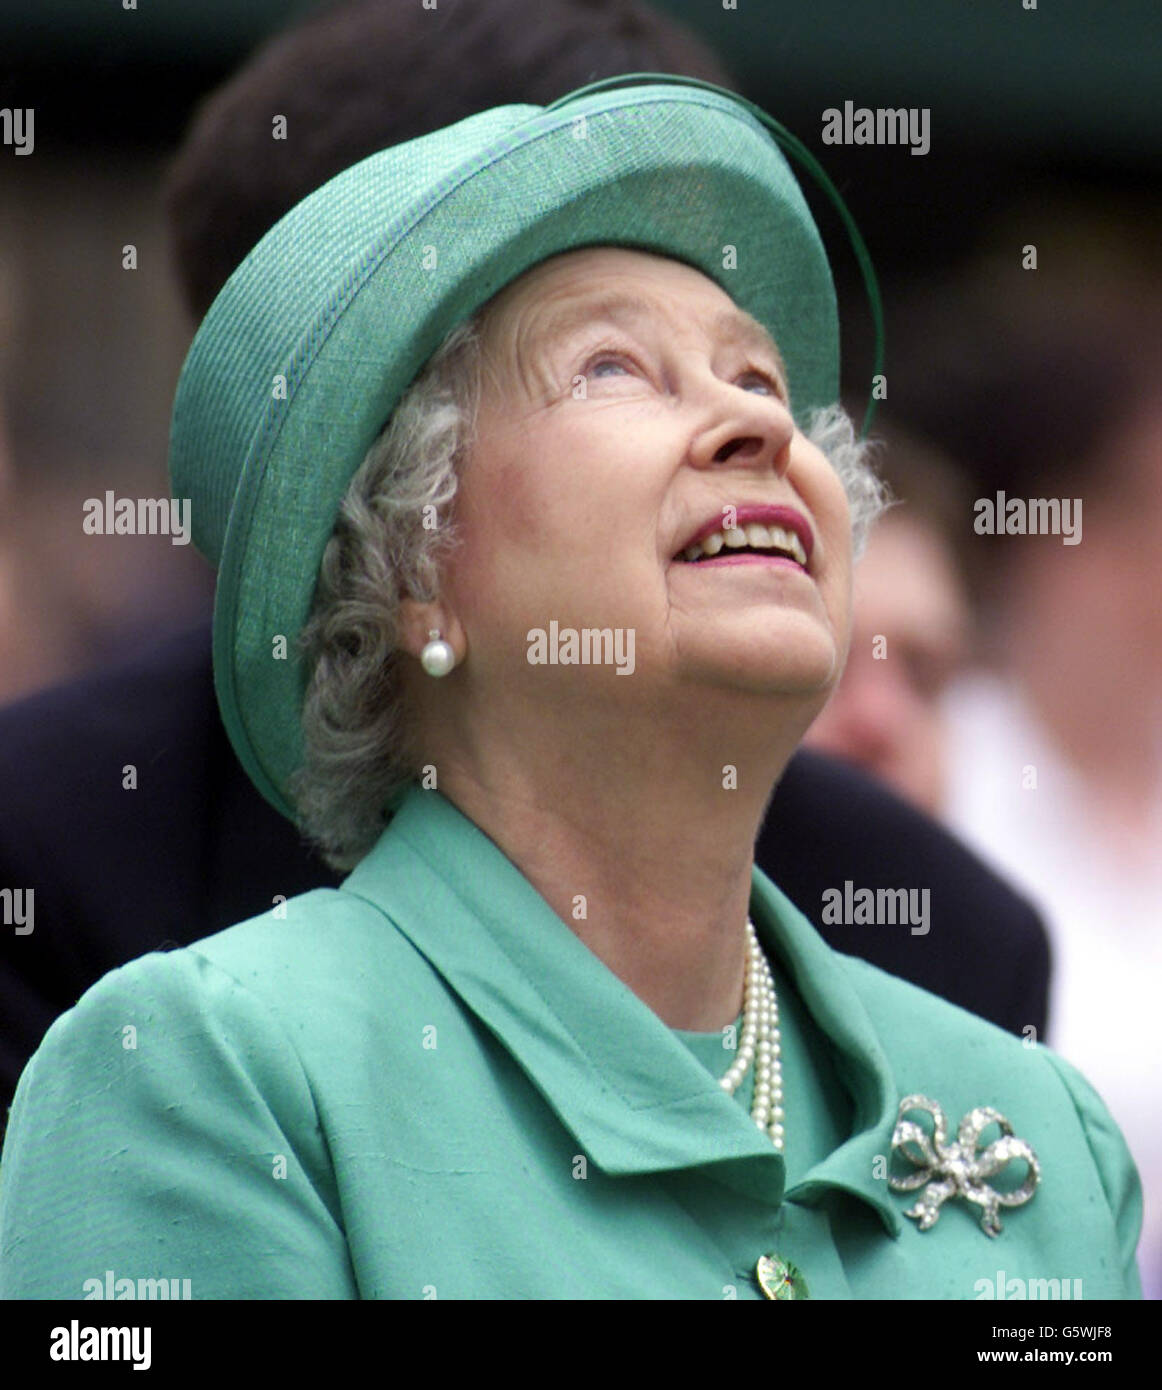 Königin Elizabeth II. Untersucht das Wetter während ihres Besuchs in Slough, in der Stadt, im Rahmen der Feierlichkeiten zum Goldenen Jubiläum. Stockfoto